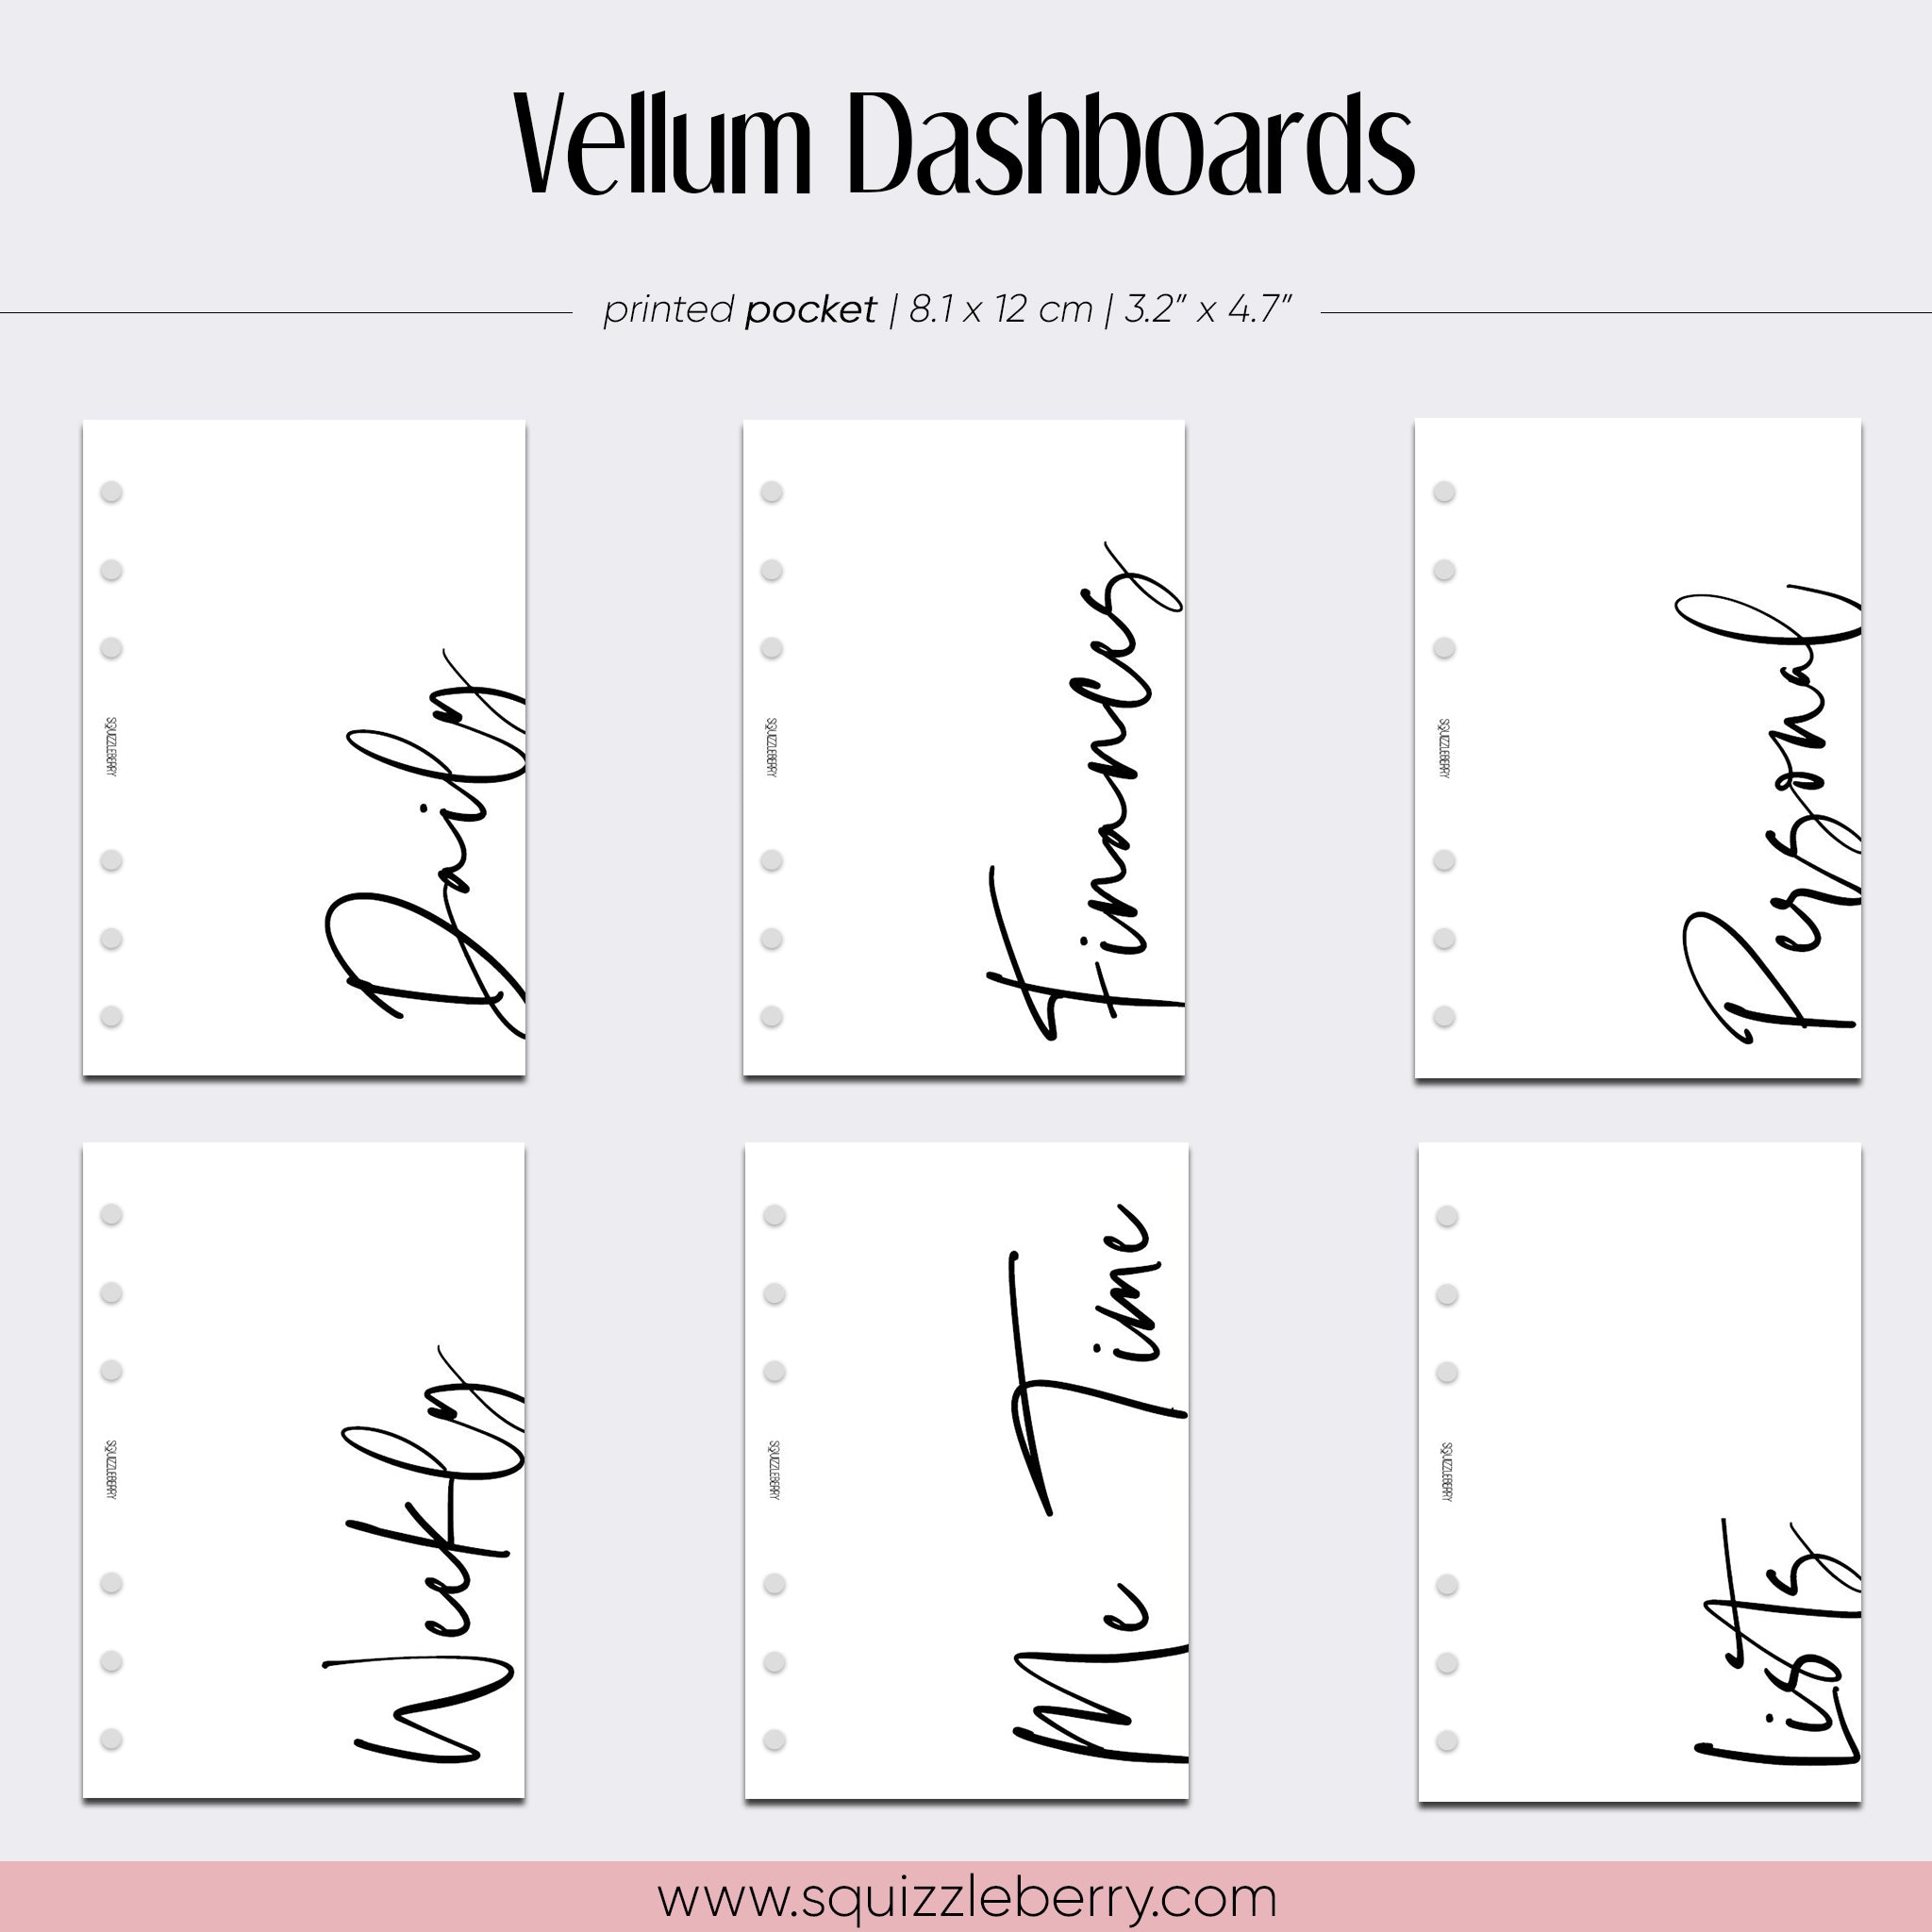 Vellum Dashboards - Pocket | SquizzleBerry